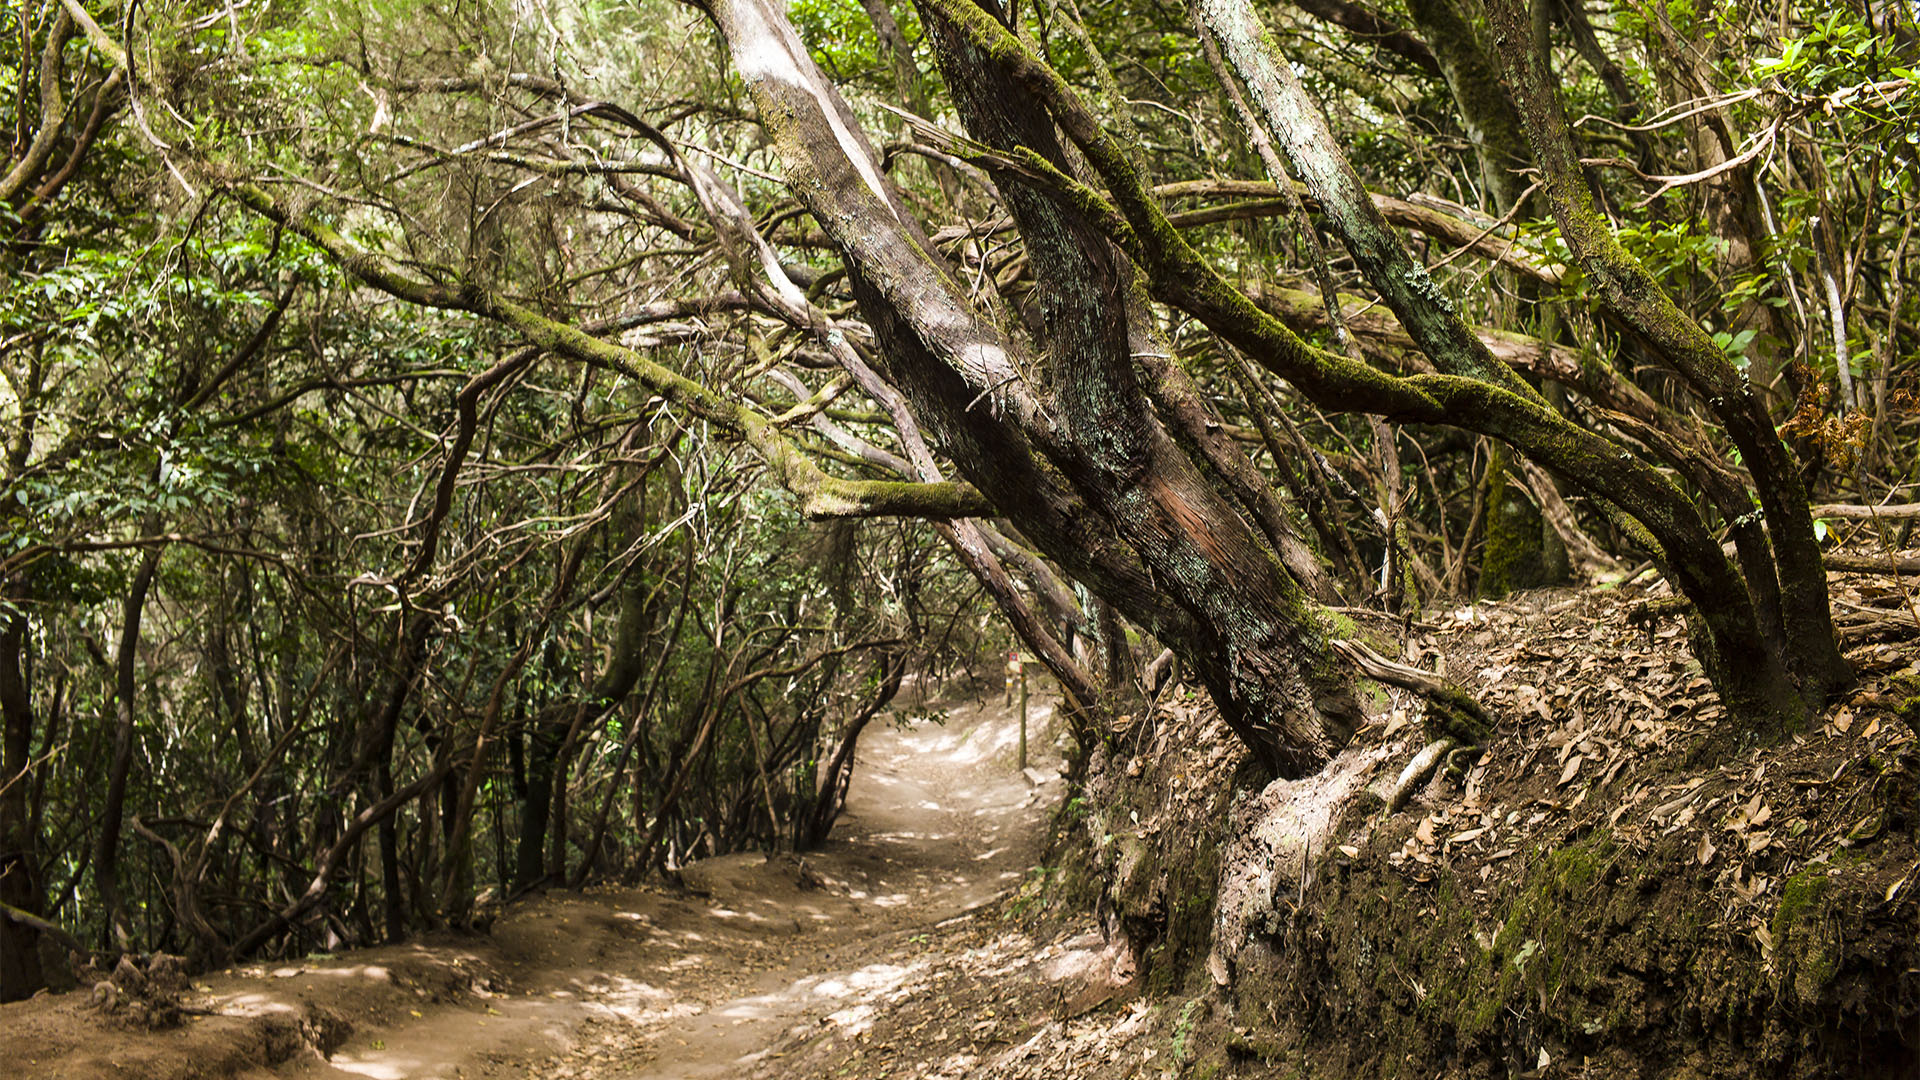 Der Mercedes Wald – unter dichten Baumkronen, geht es lauschig durch den Wald. Durch die feuchte, subtropische Luft verbreiten sich intensive Gerüche des Waldes.